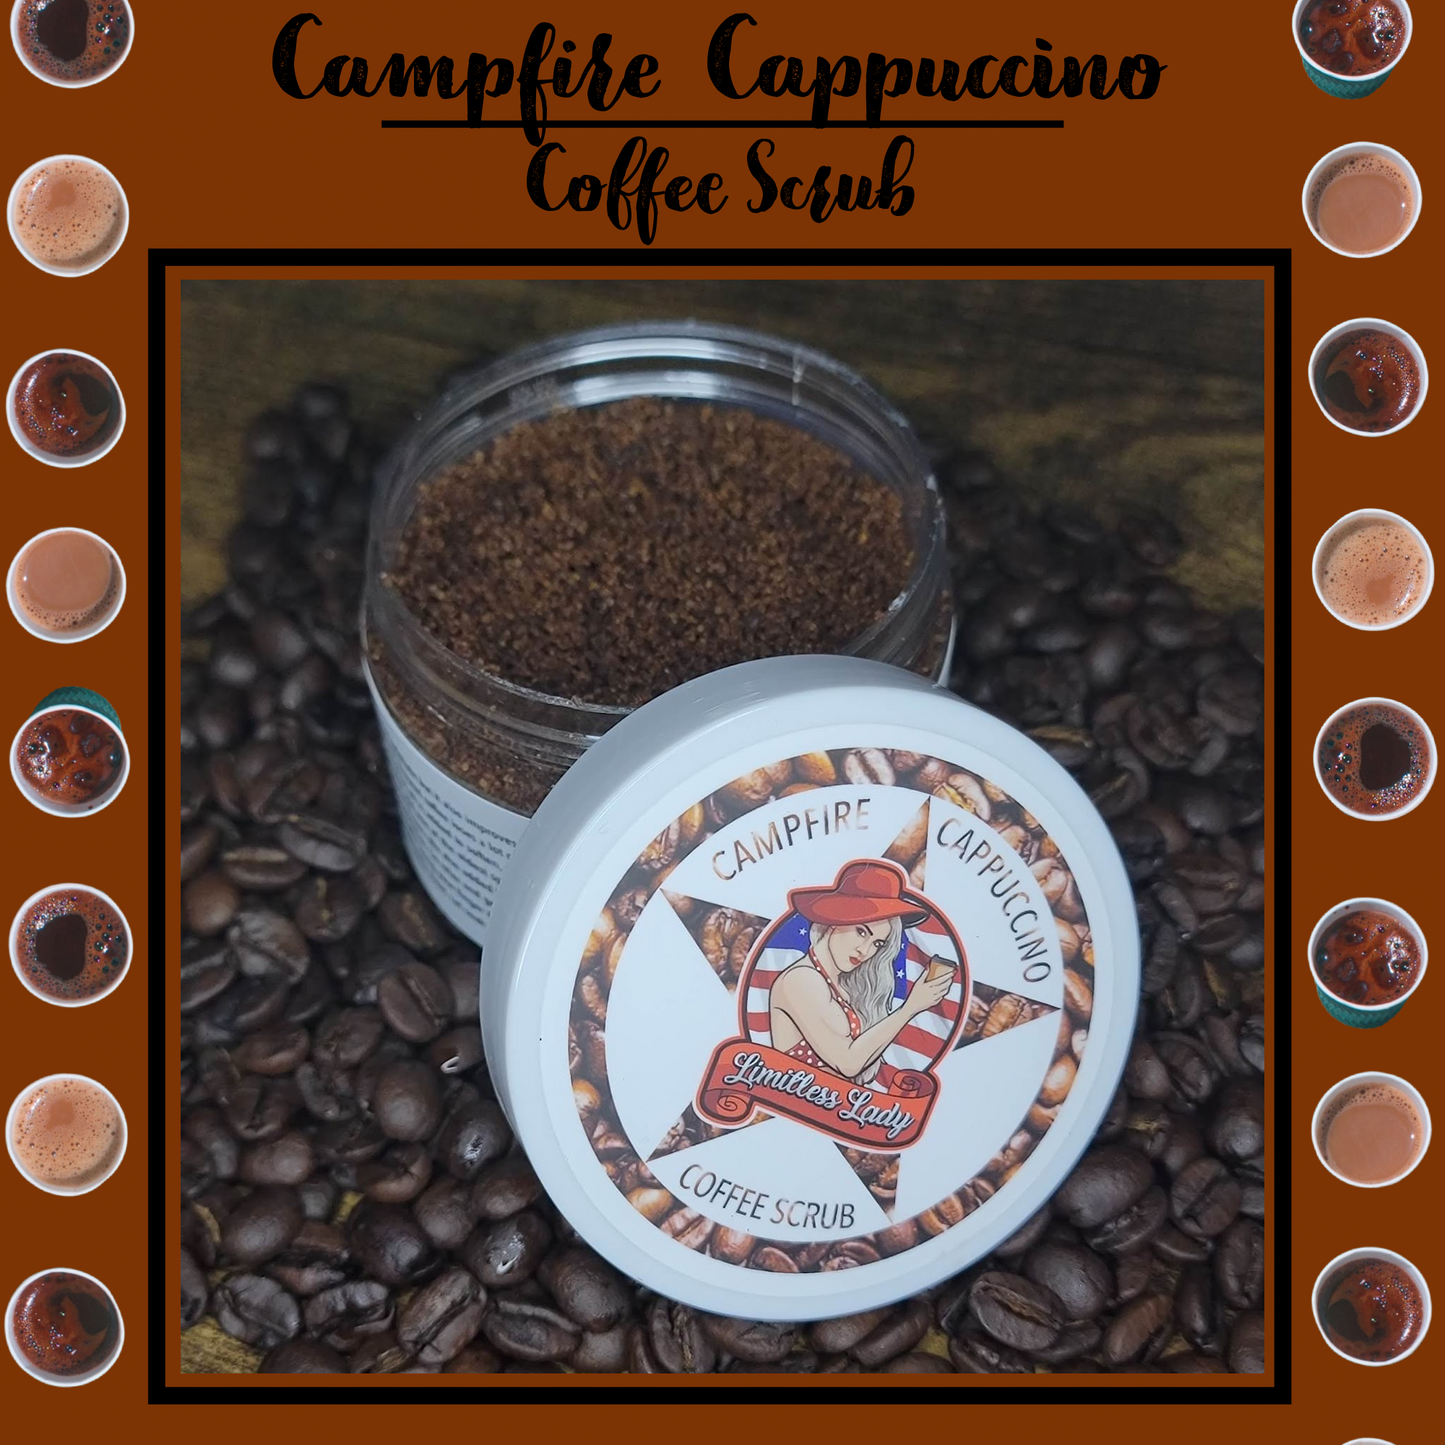 Campfire Cappuccino Coffee Scrub